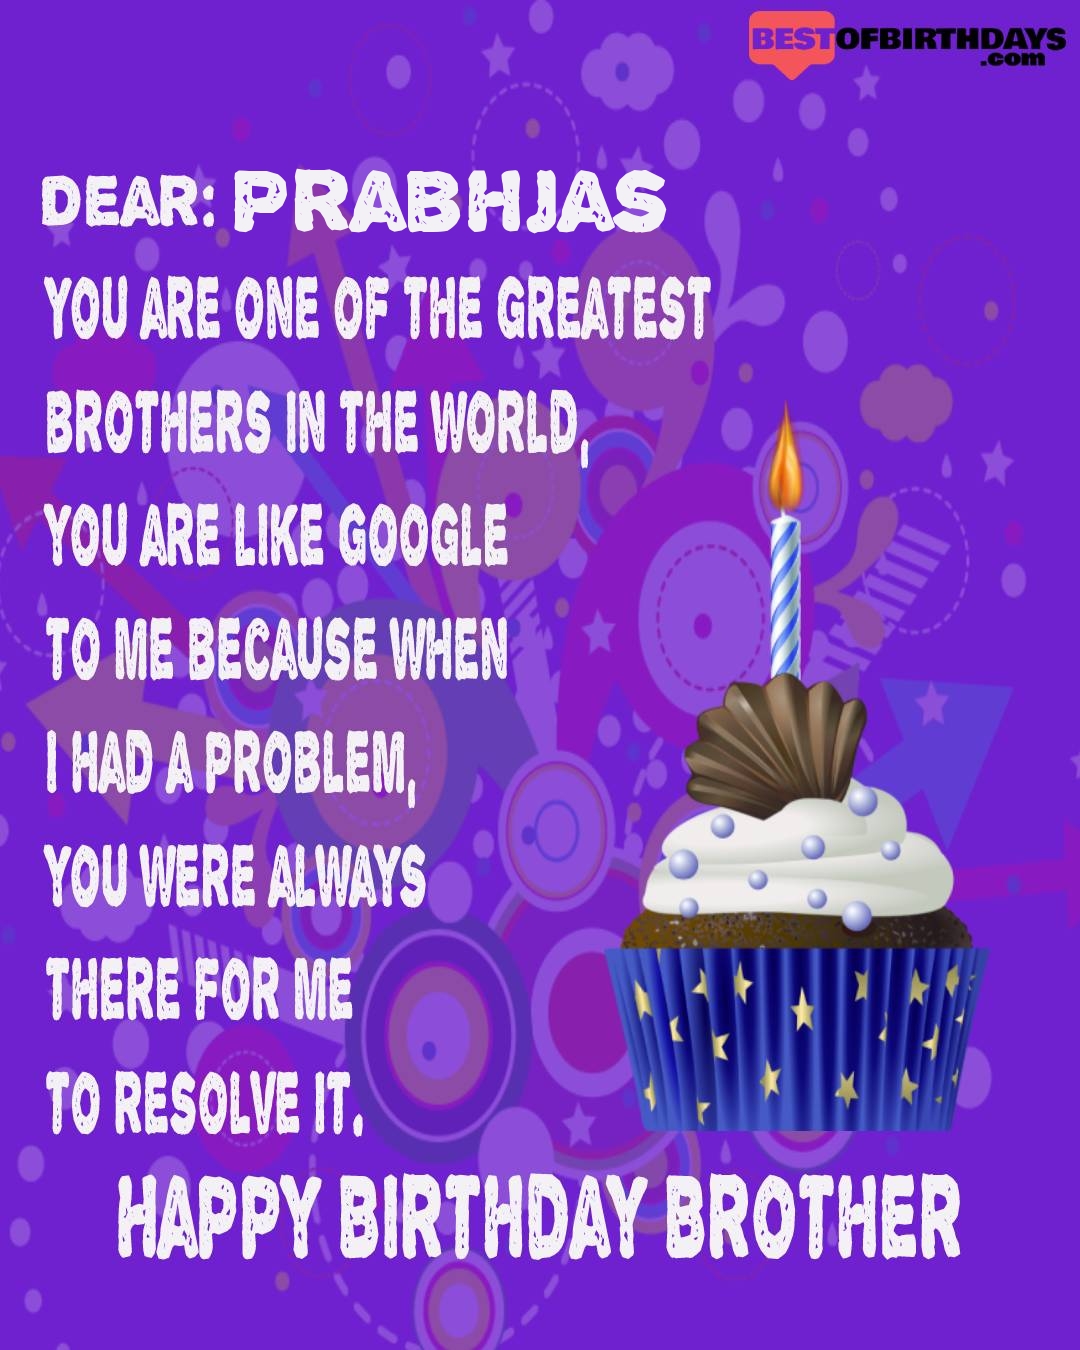 Happy birthday prabhjas bhai brother bro